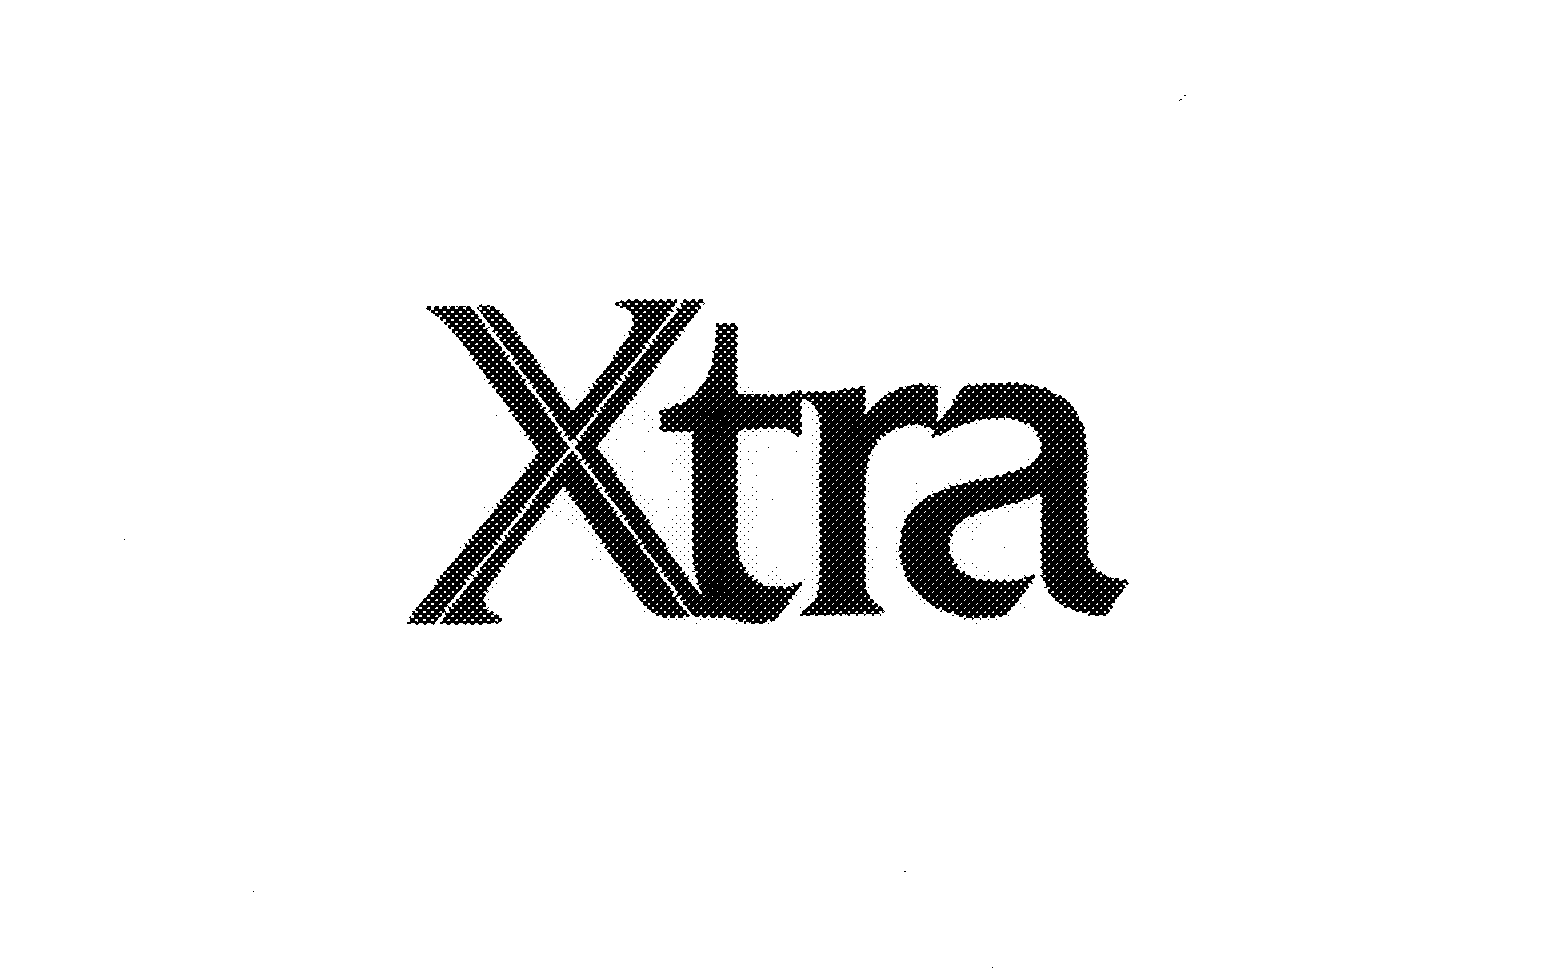 Trademark Logo XTRA